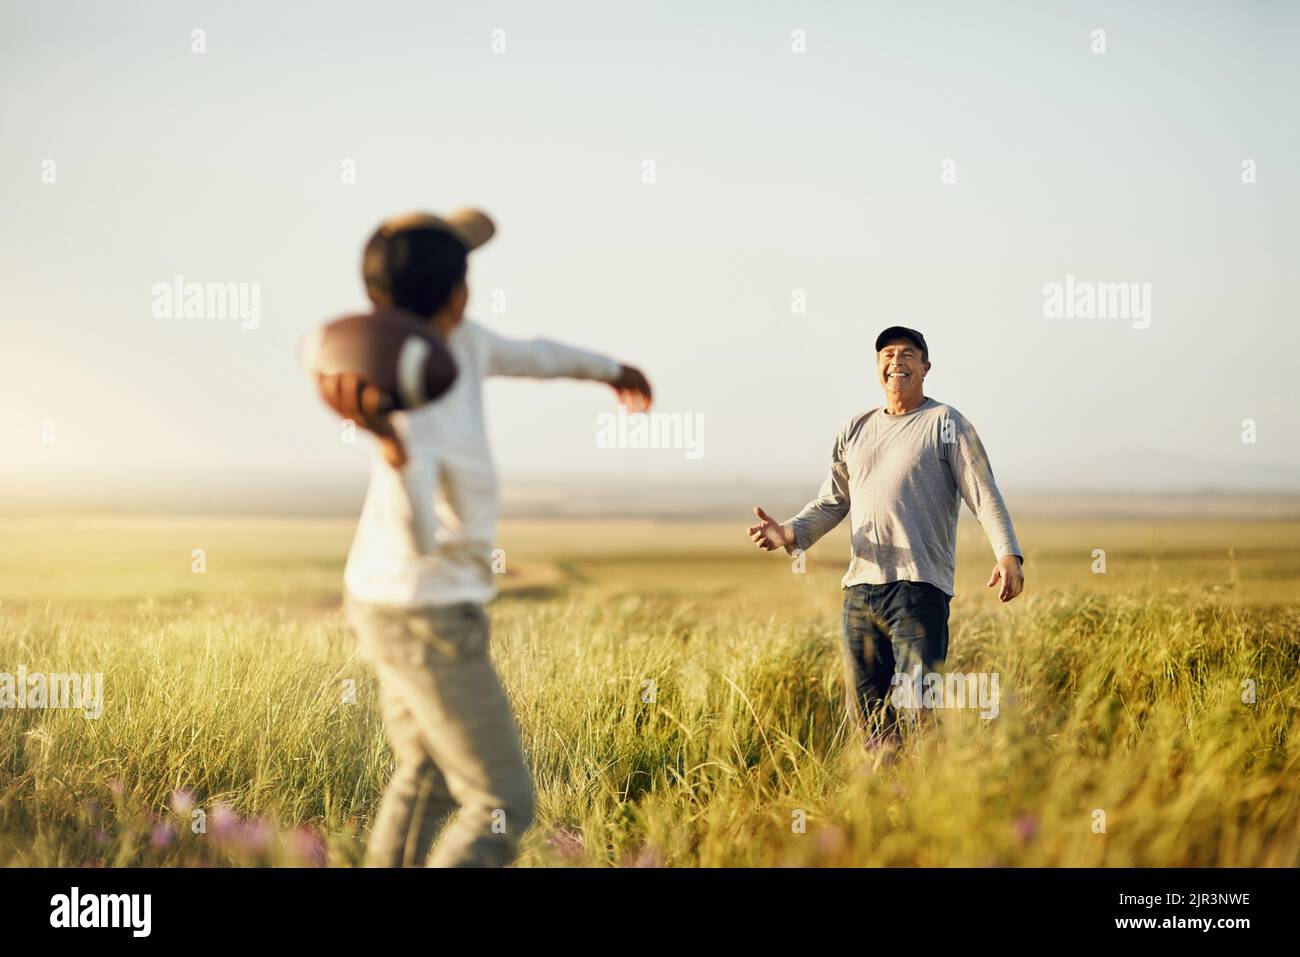 Mit unserer eigenen Bonding Session. Vater und Sohn Fußball spielen auf einem offenen Feld. Stockfoto